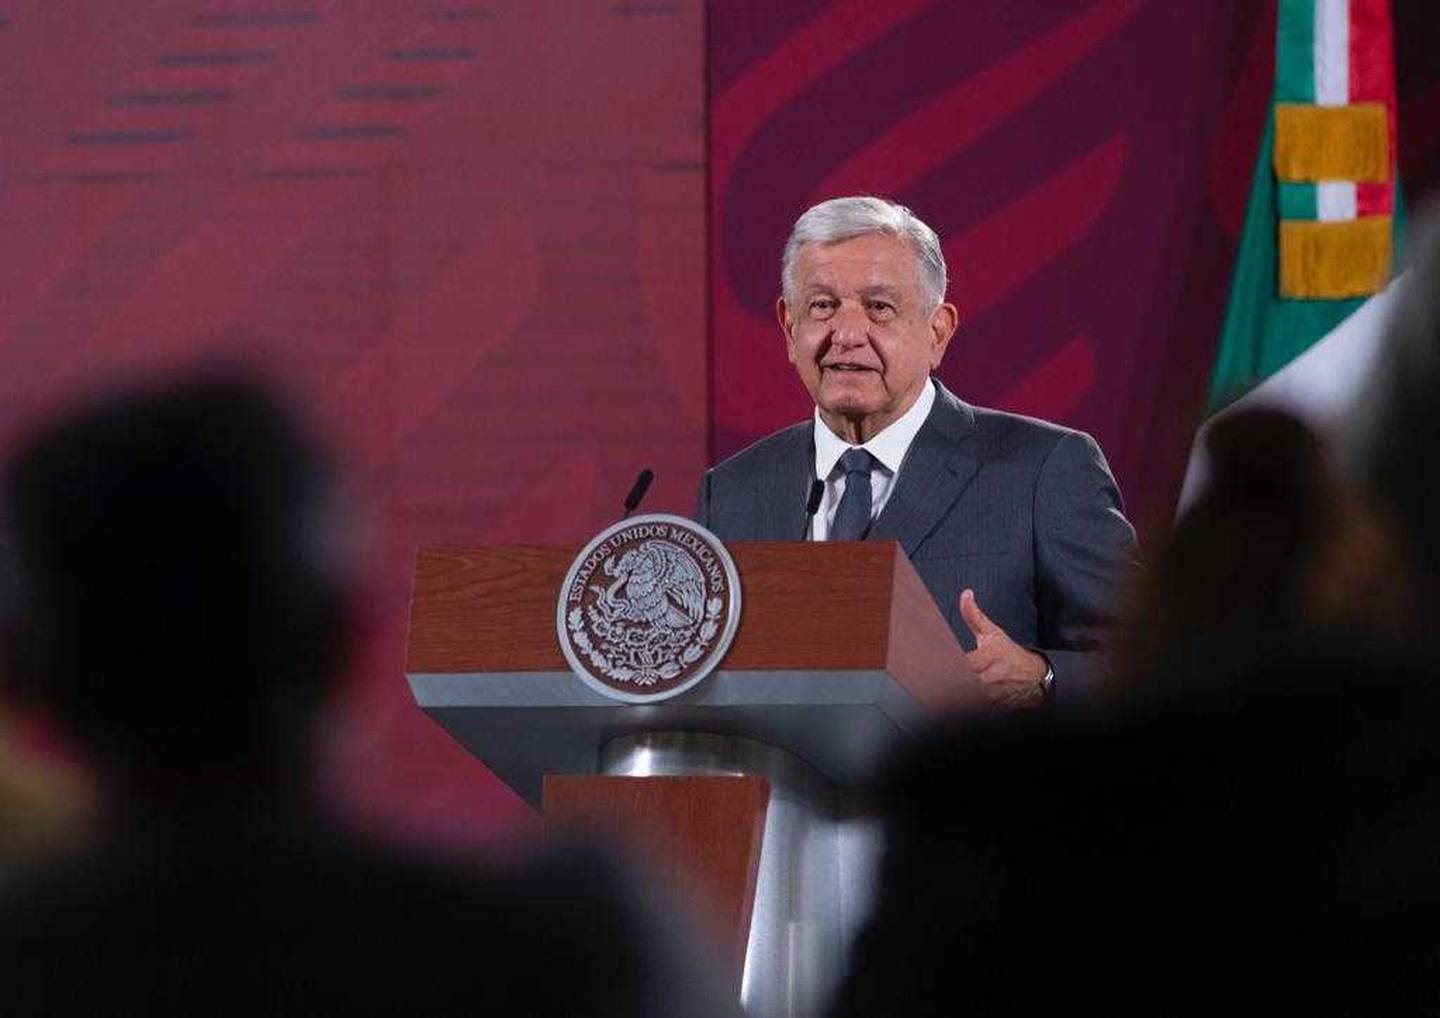 Andrés Manuel López Obrador, dijo que el Gobierno de Perú, es muy cuestionado por optar por la represión y no buscar una salida al conflicto mediante el diálogo y la democracia